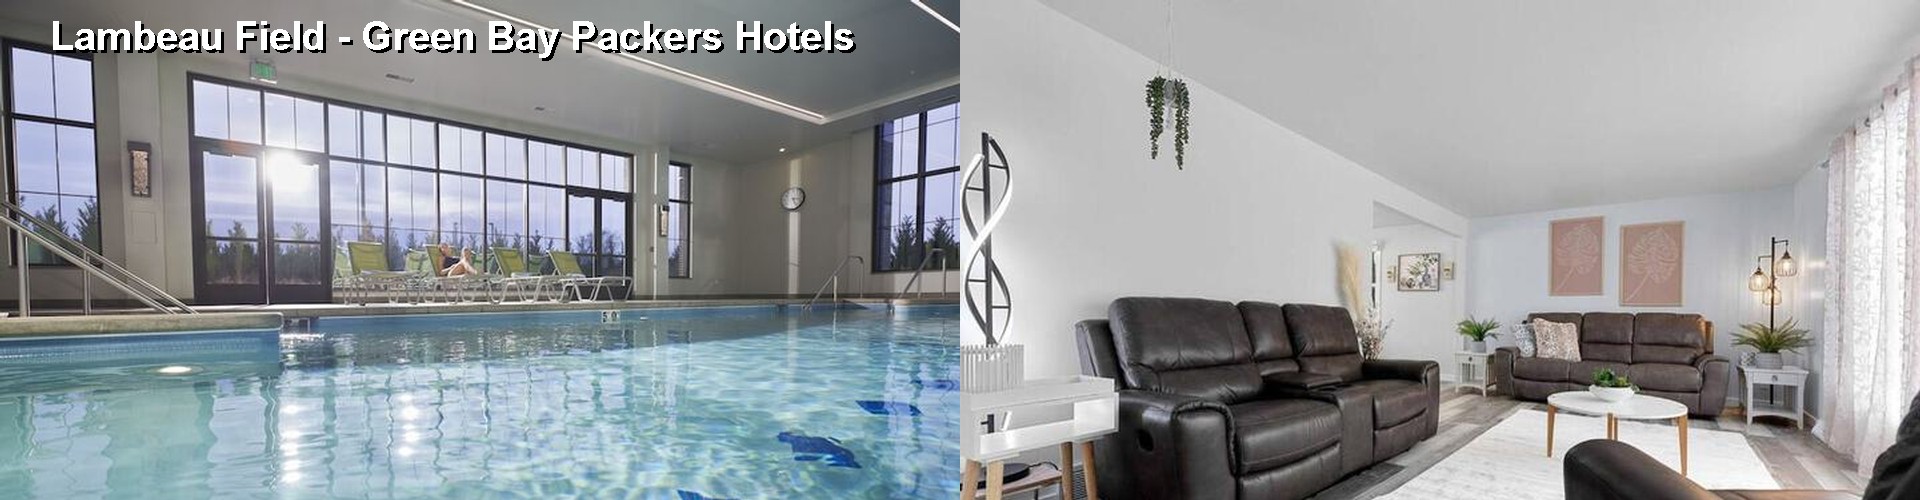 5 Best Hotels near Lambeau Field - Green Bay Packers